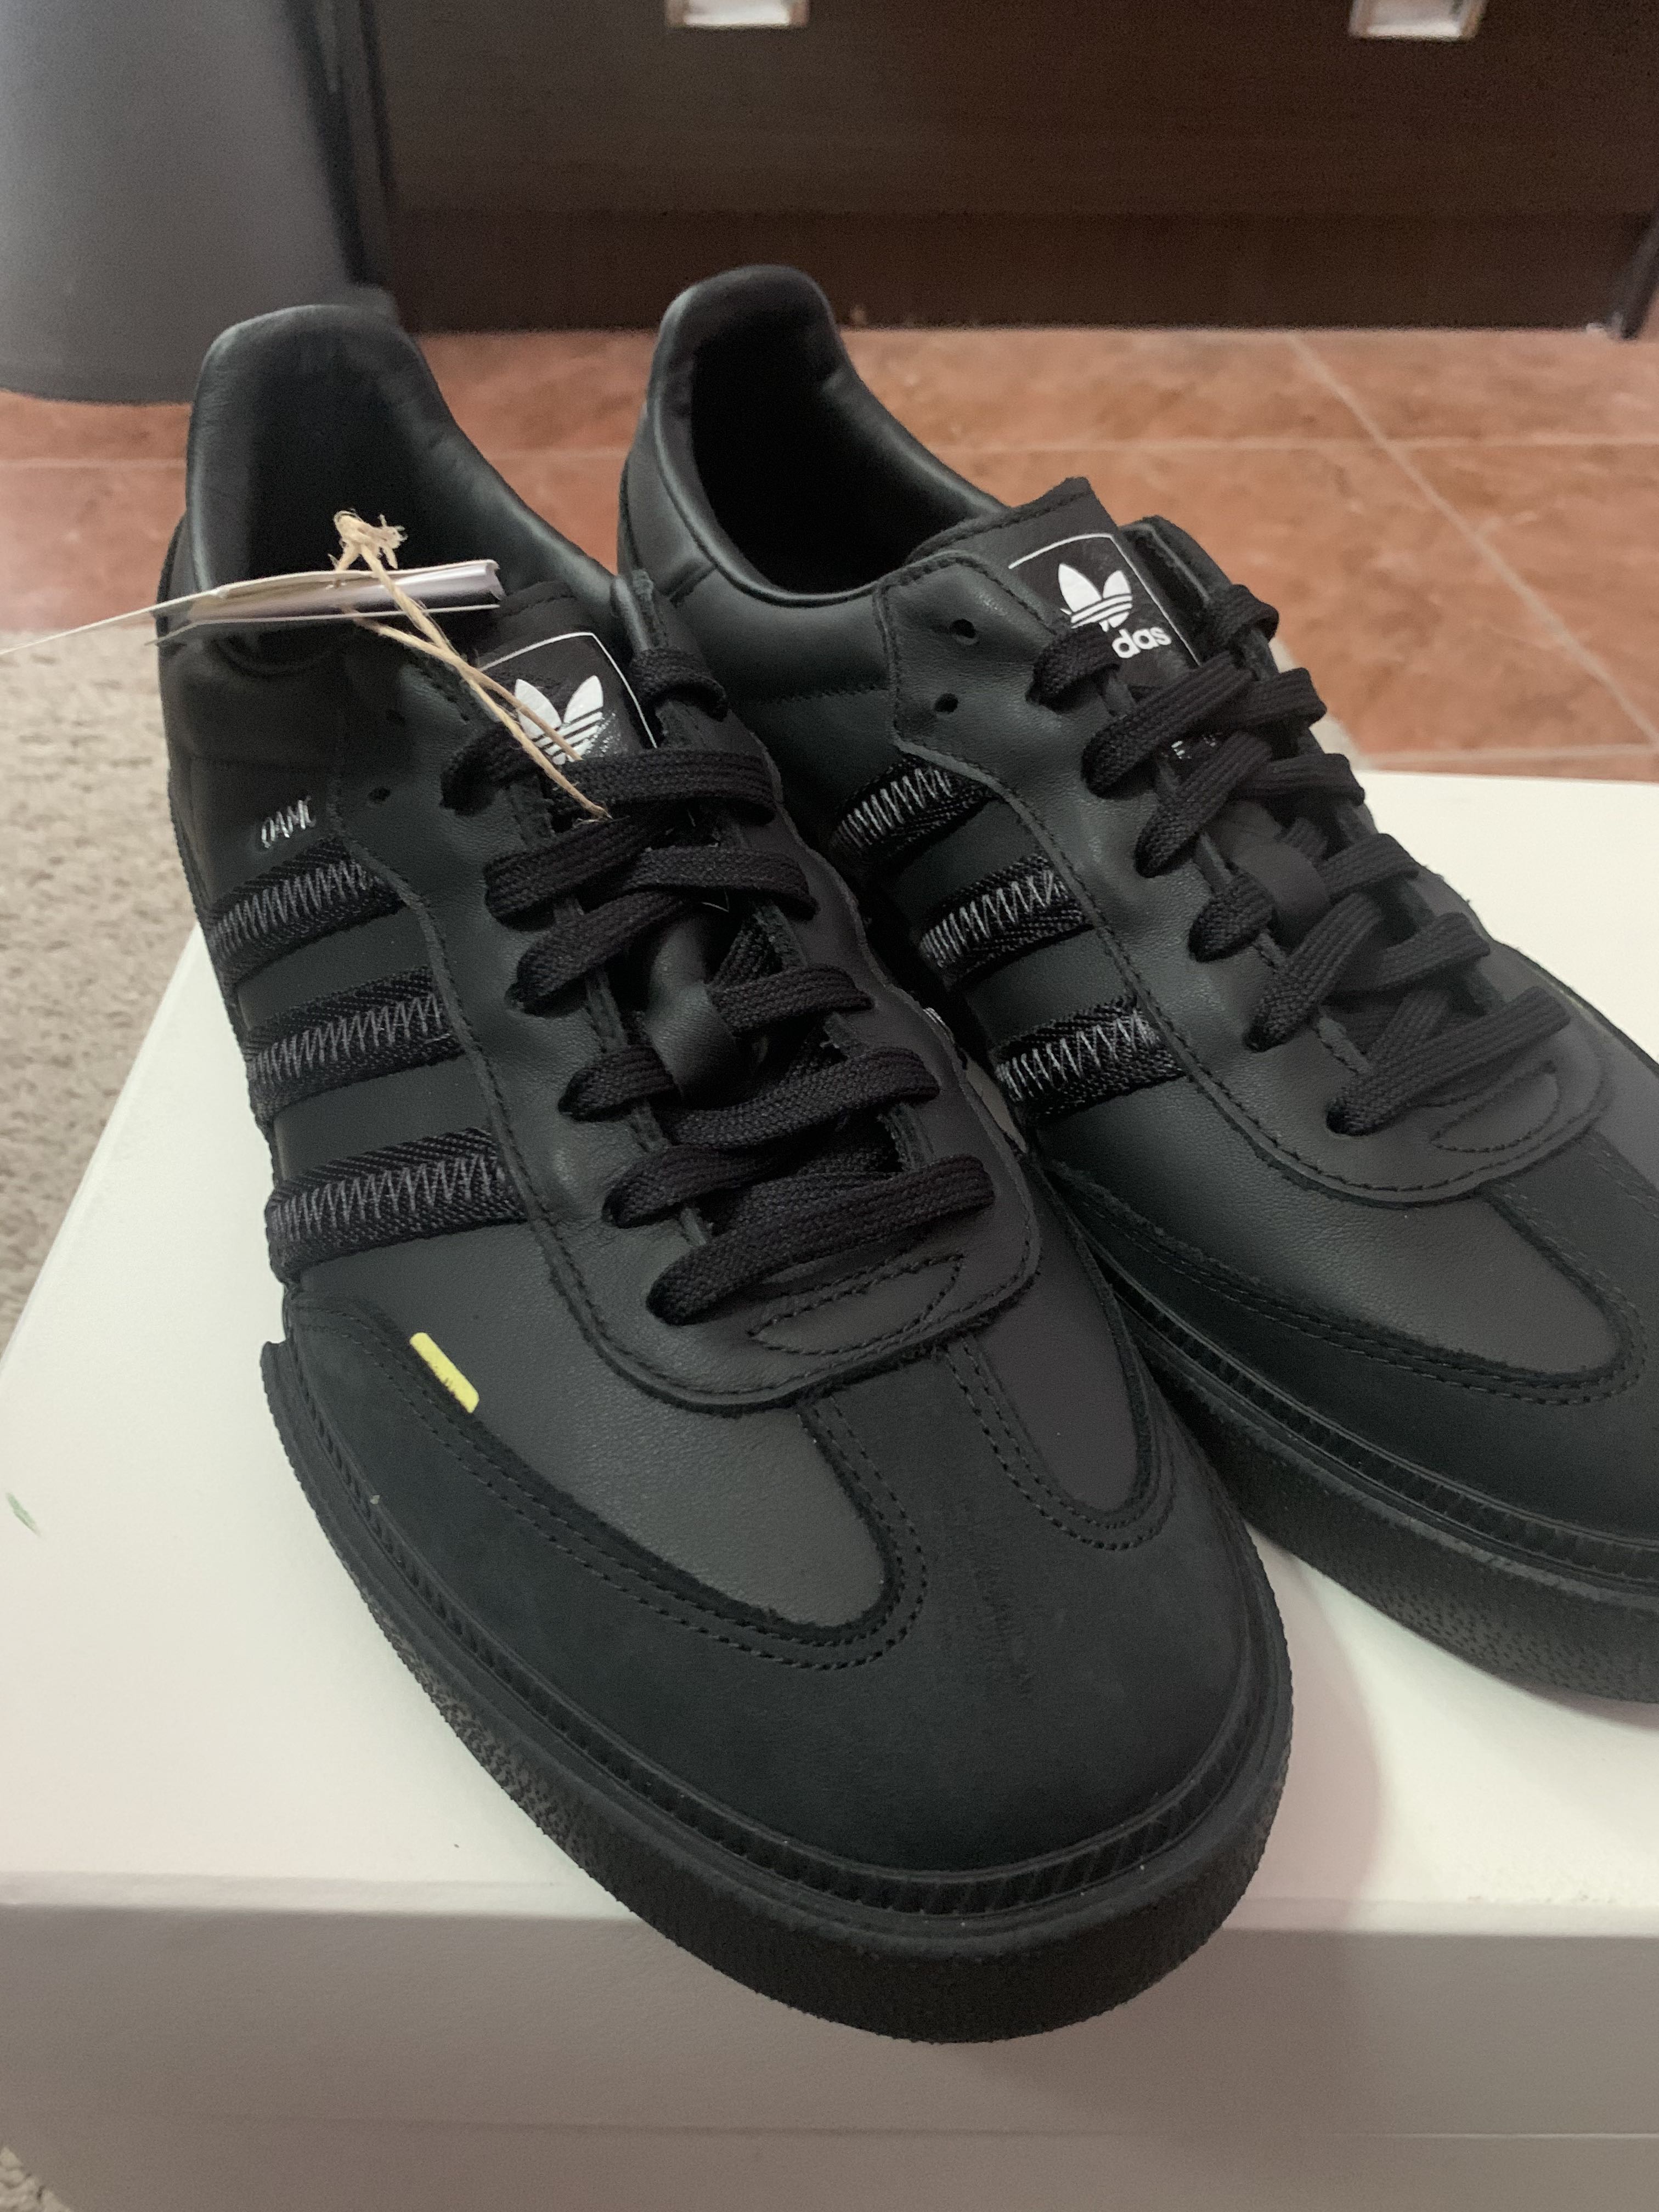 Adidas x OAMC Type O-8 UK 10, Men's Fashion, Footwear, Sneakers on